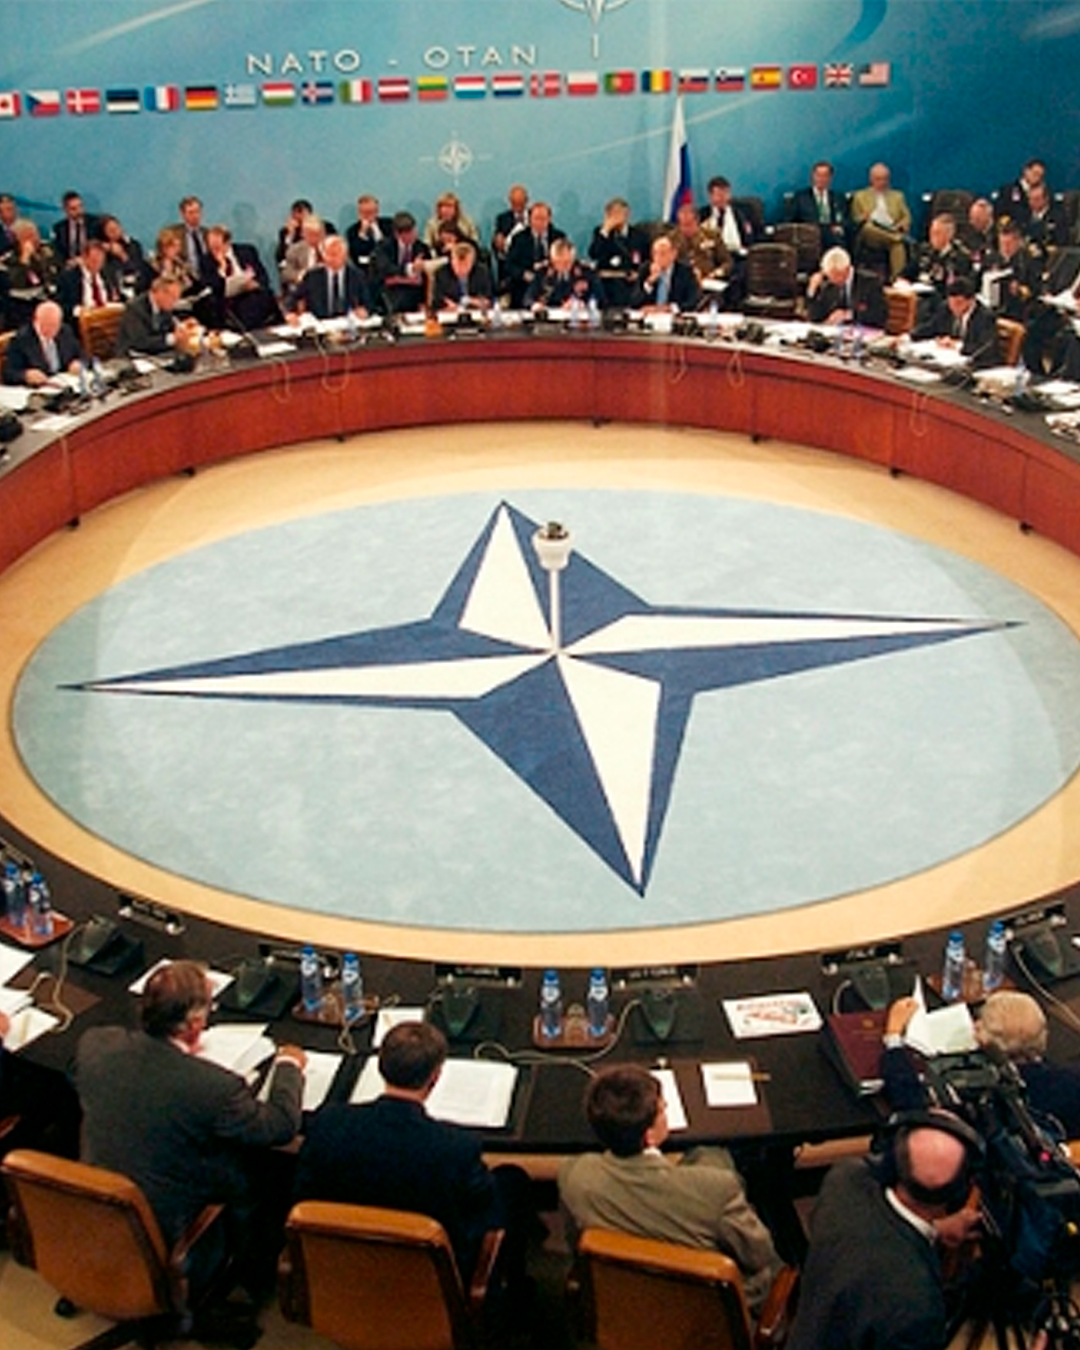 El ingreso de Finlandia y Suecia a la OTAN, un nuevo y peligroso escalamiento